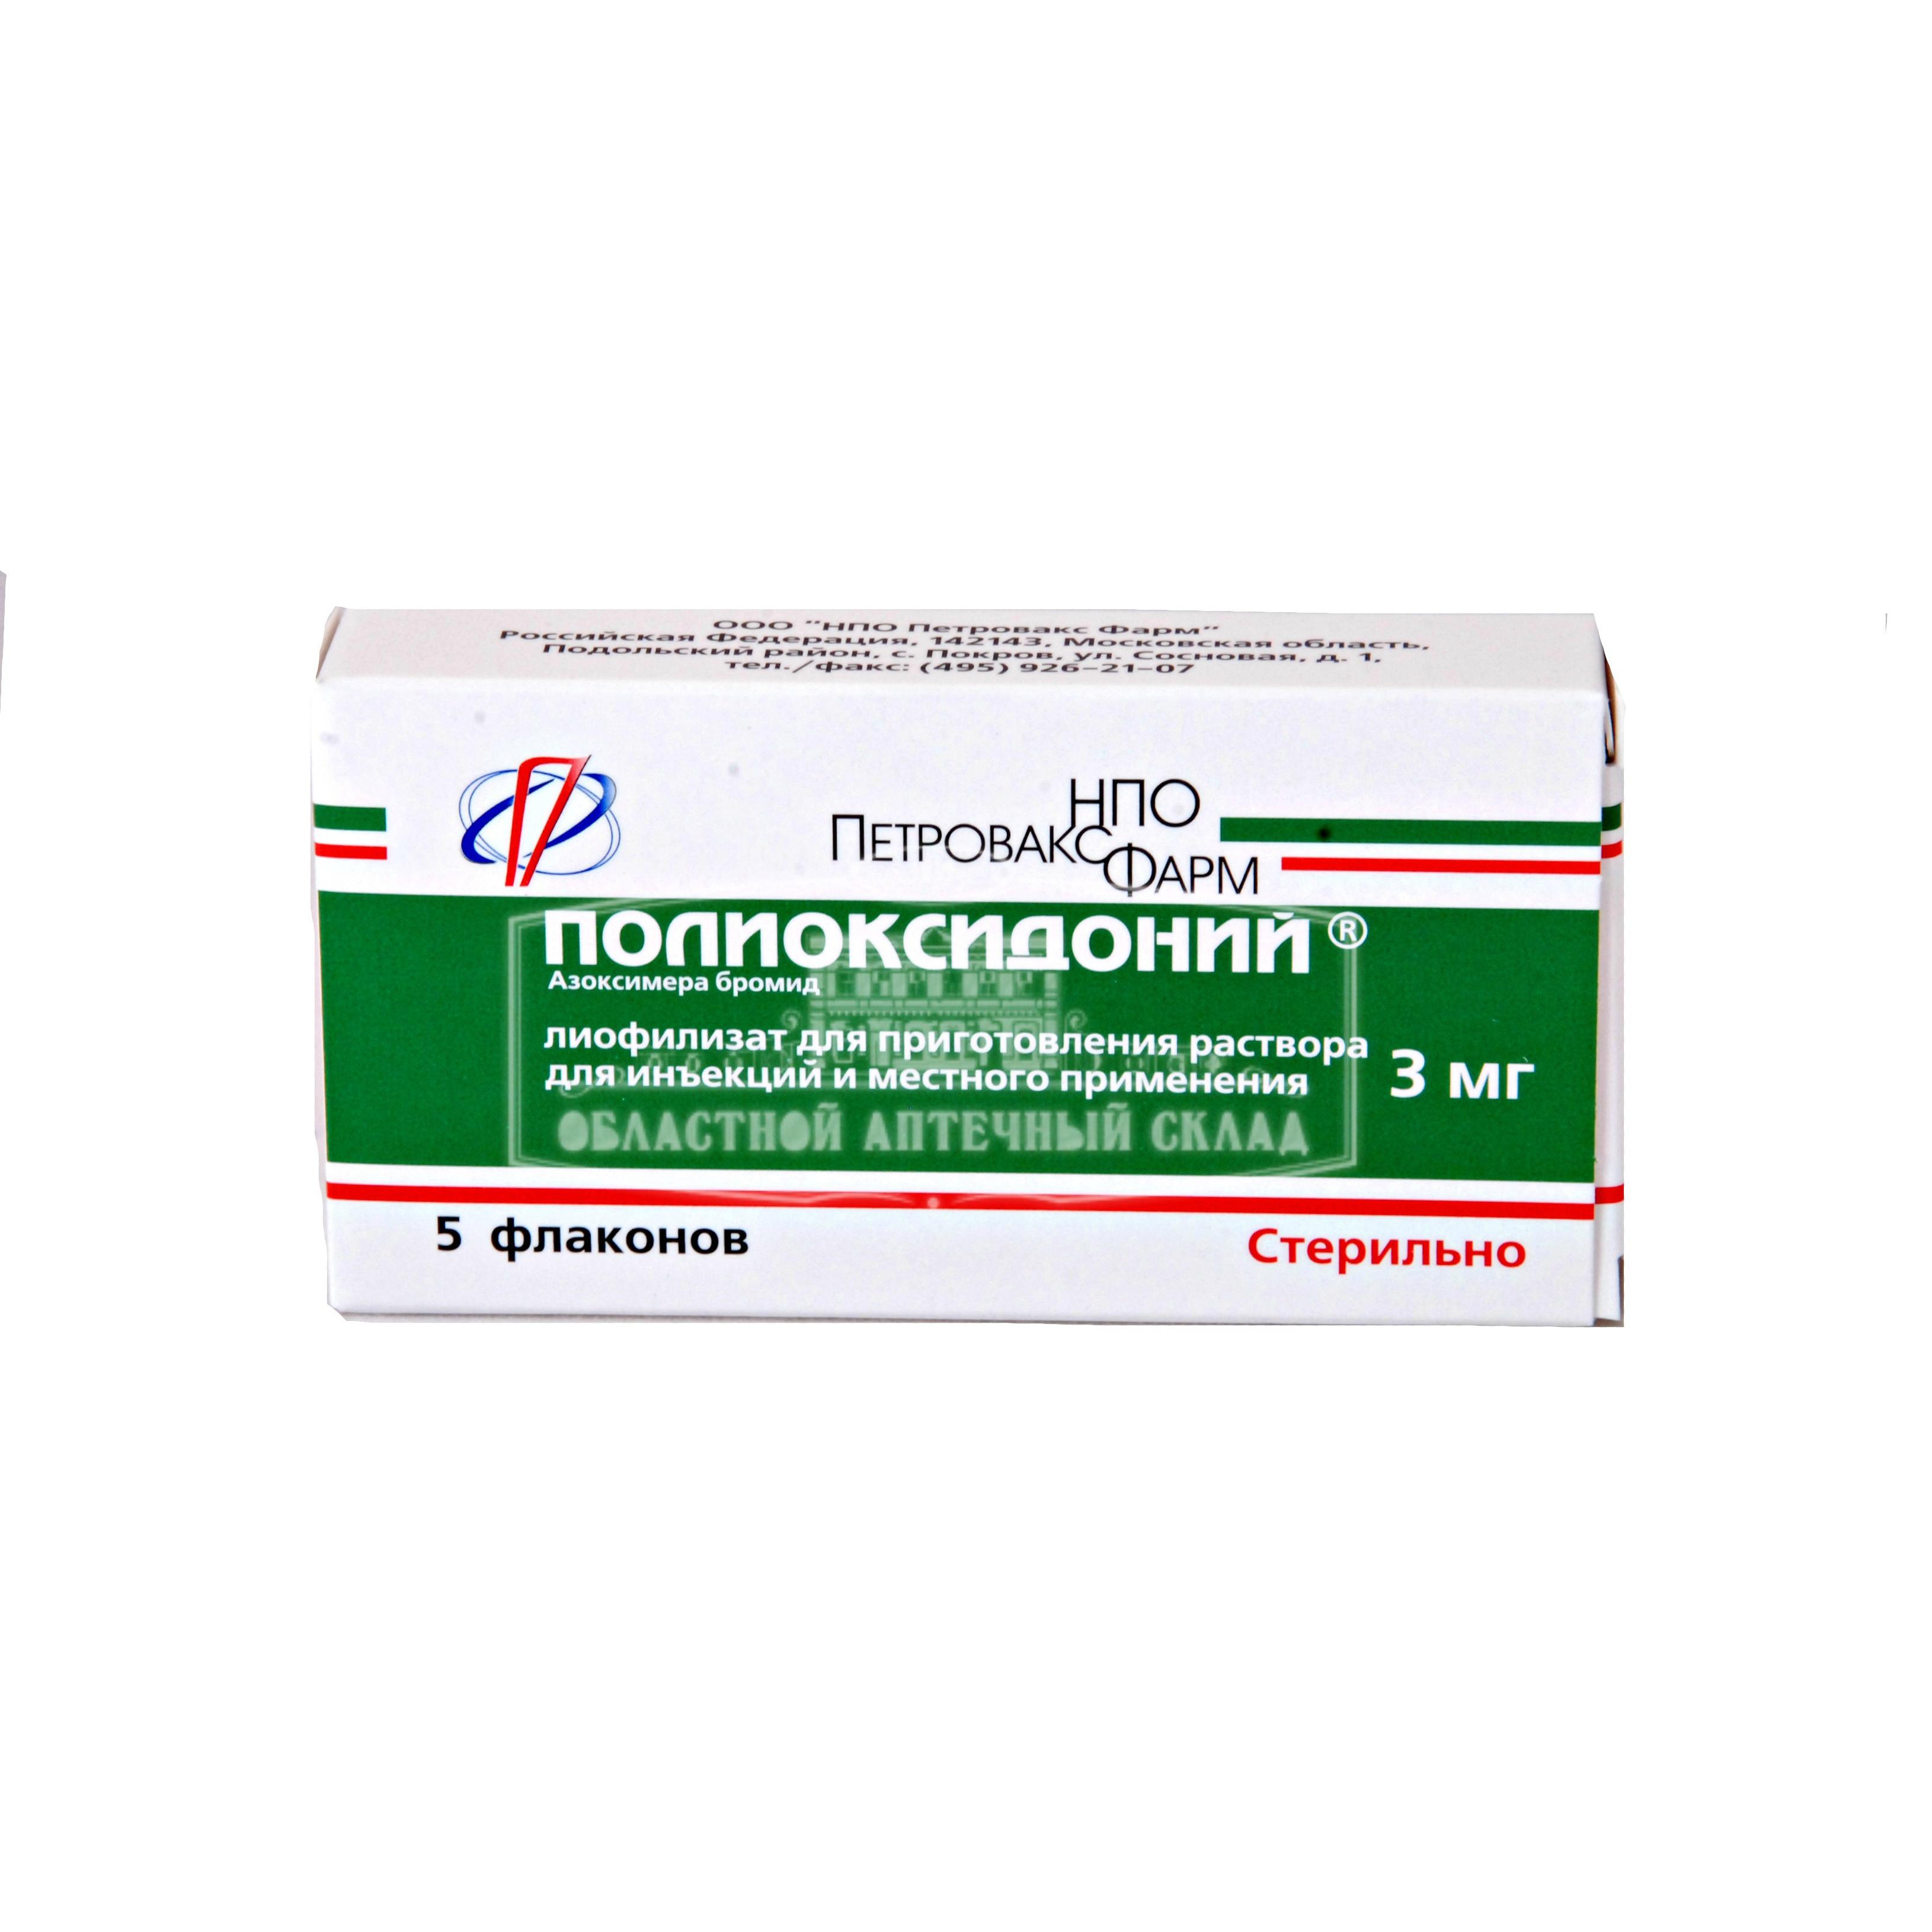 Полиоксидоний пор лф д/и 0.003г N5  в Челябинске по доступным ценам